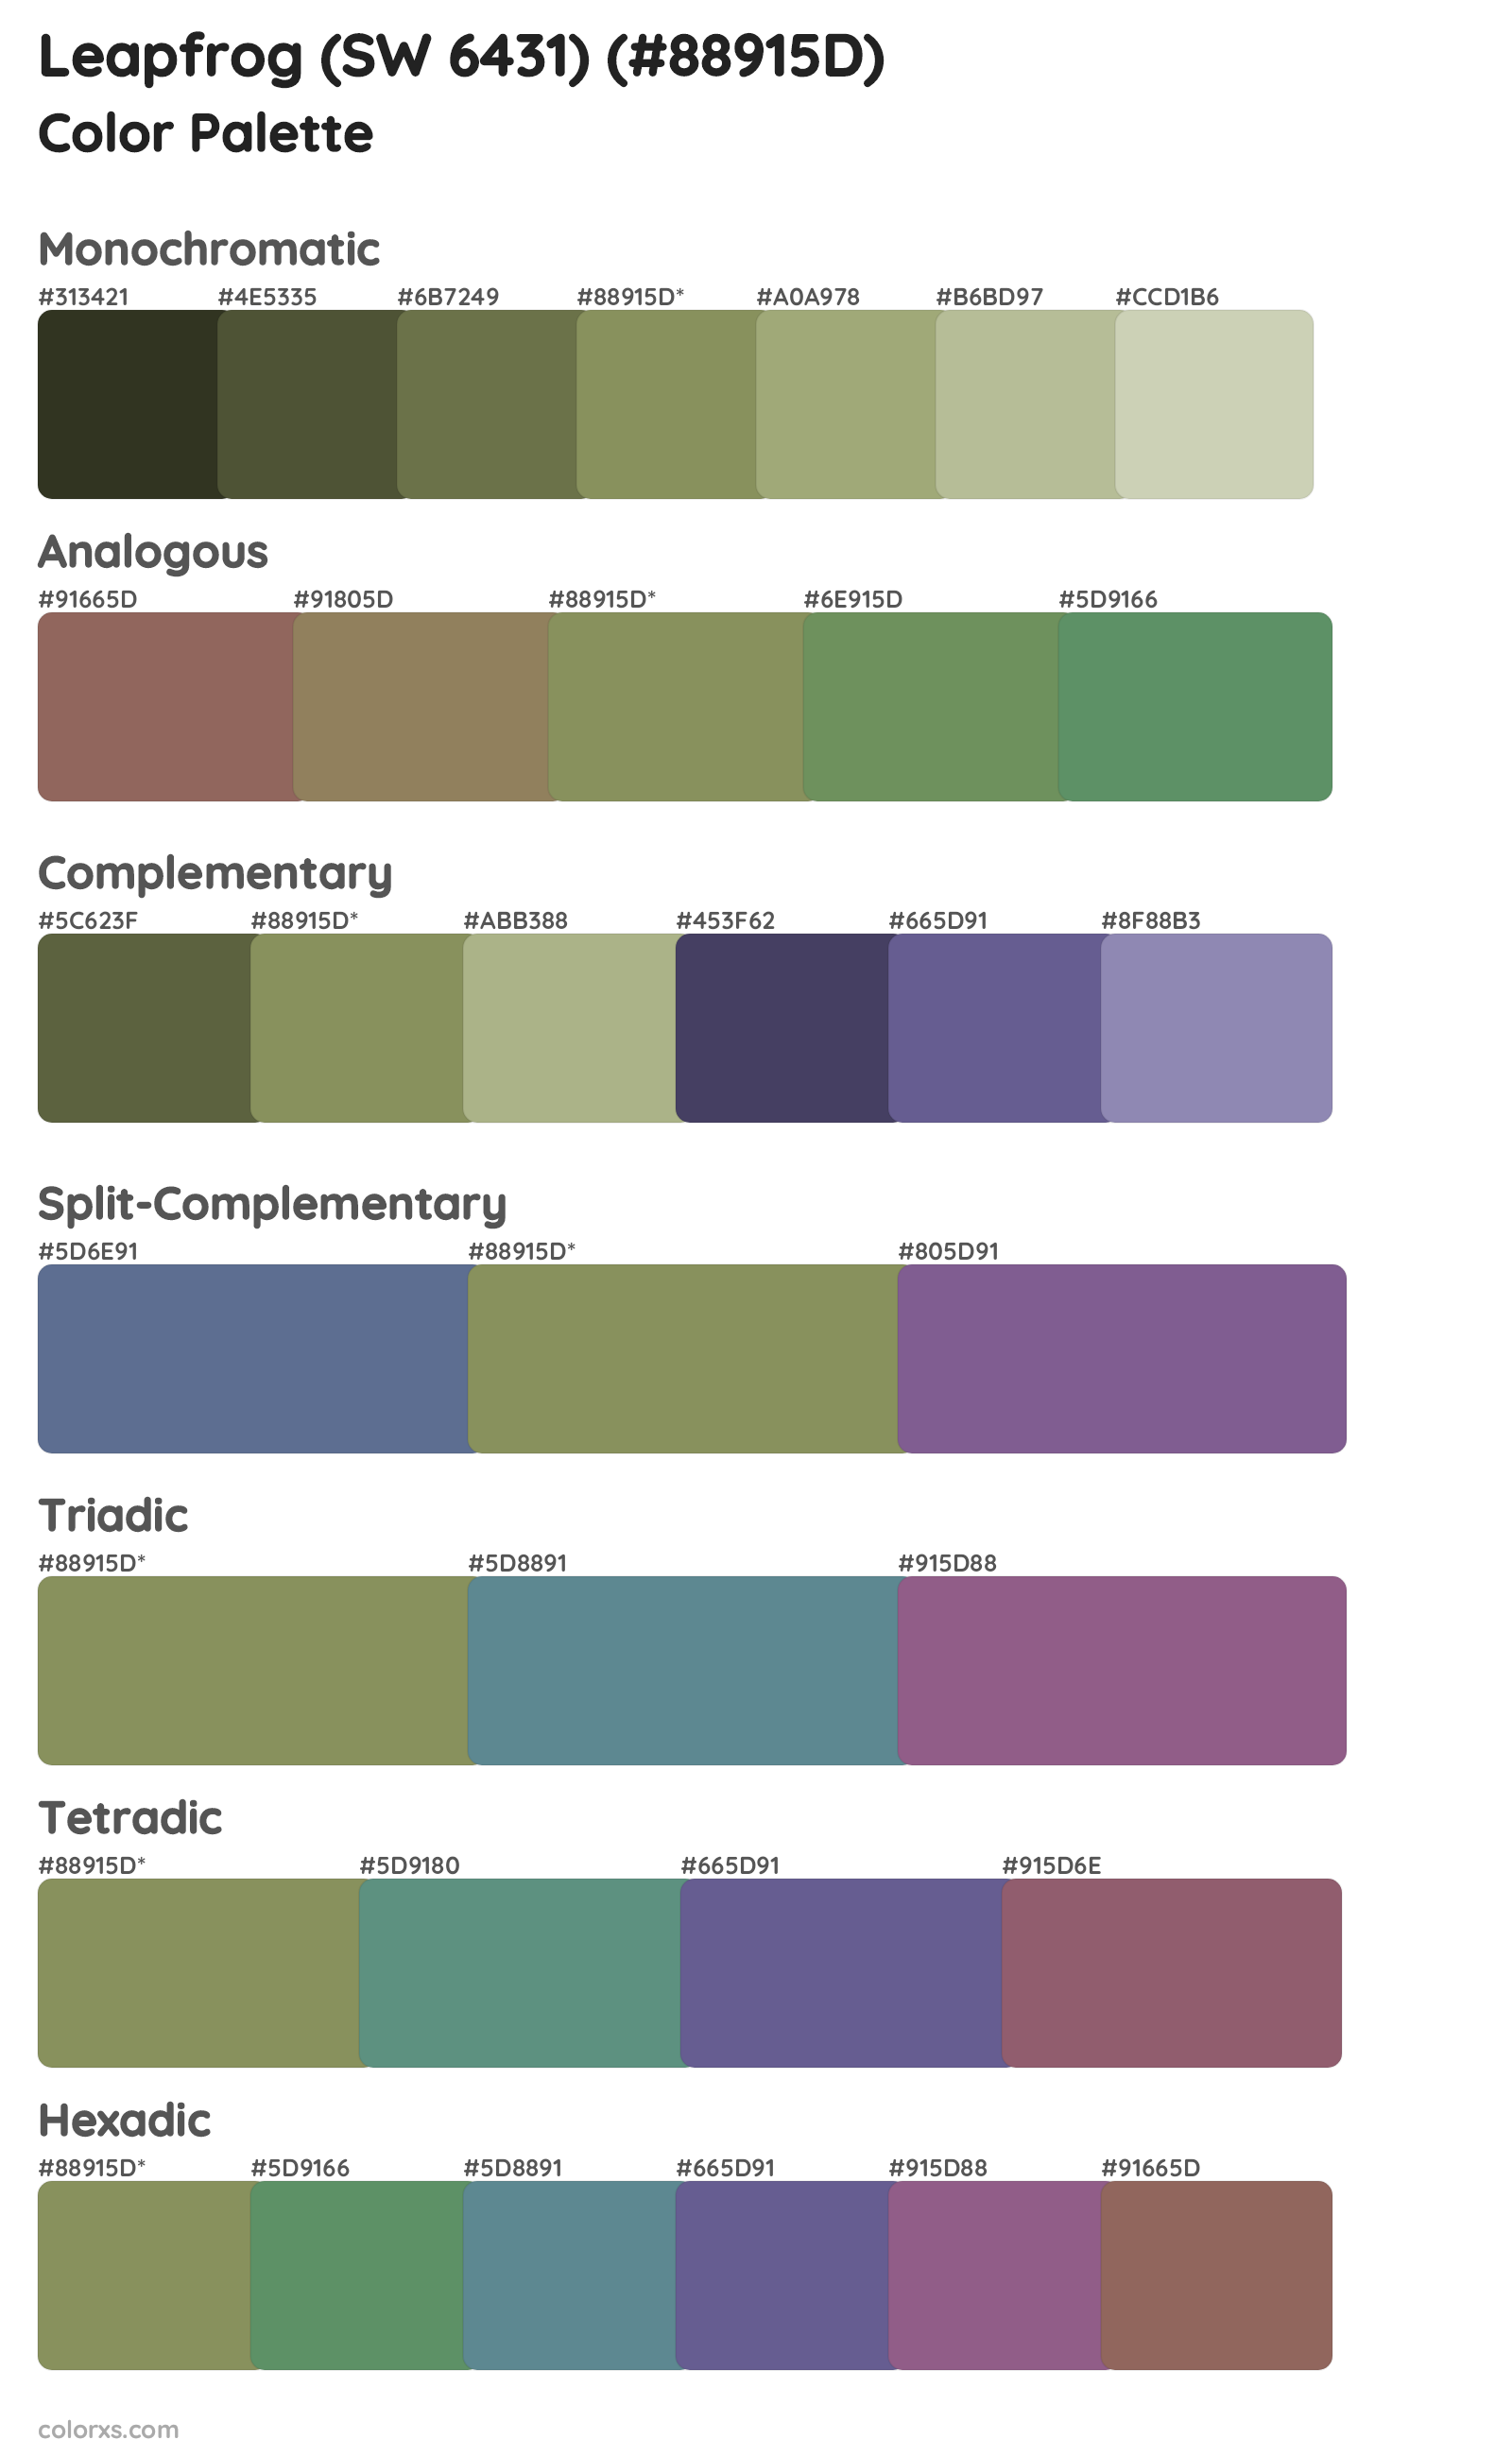 Leapfrog (SW 6431) Color Scheme Palettes